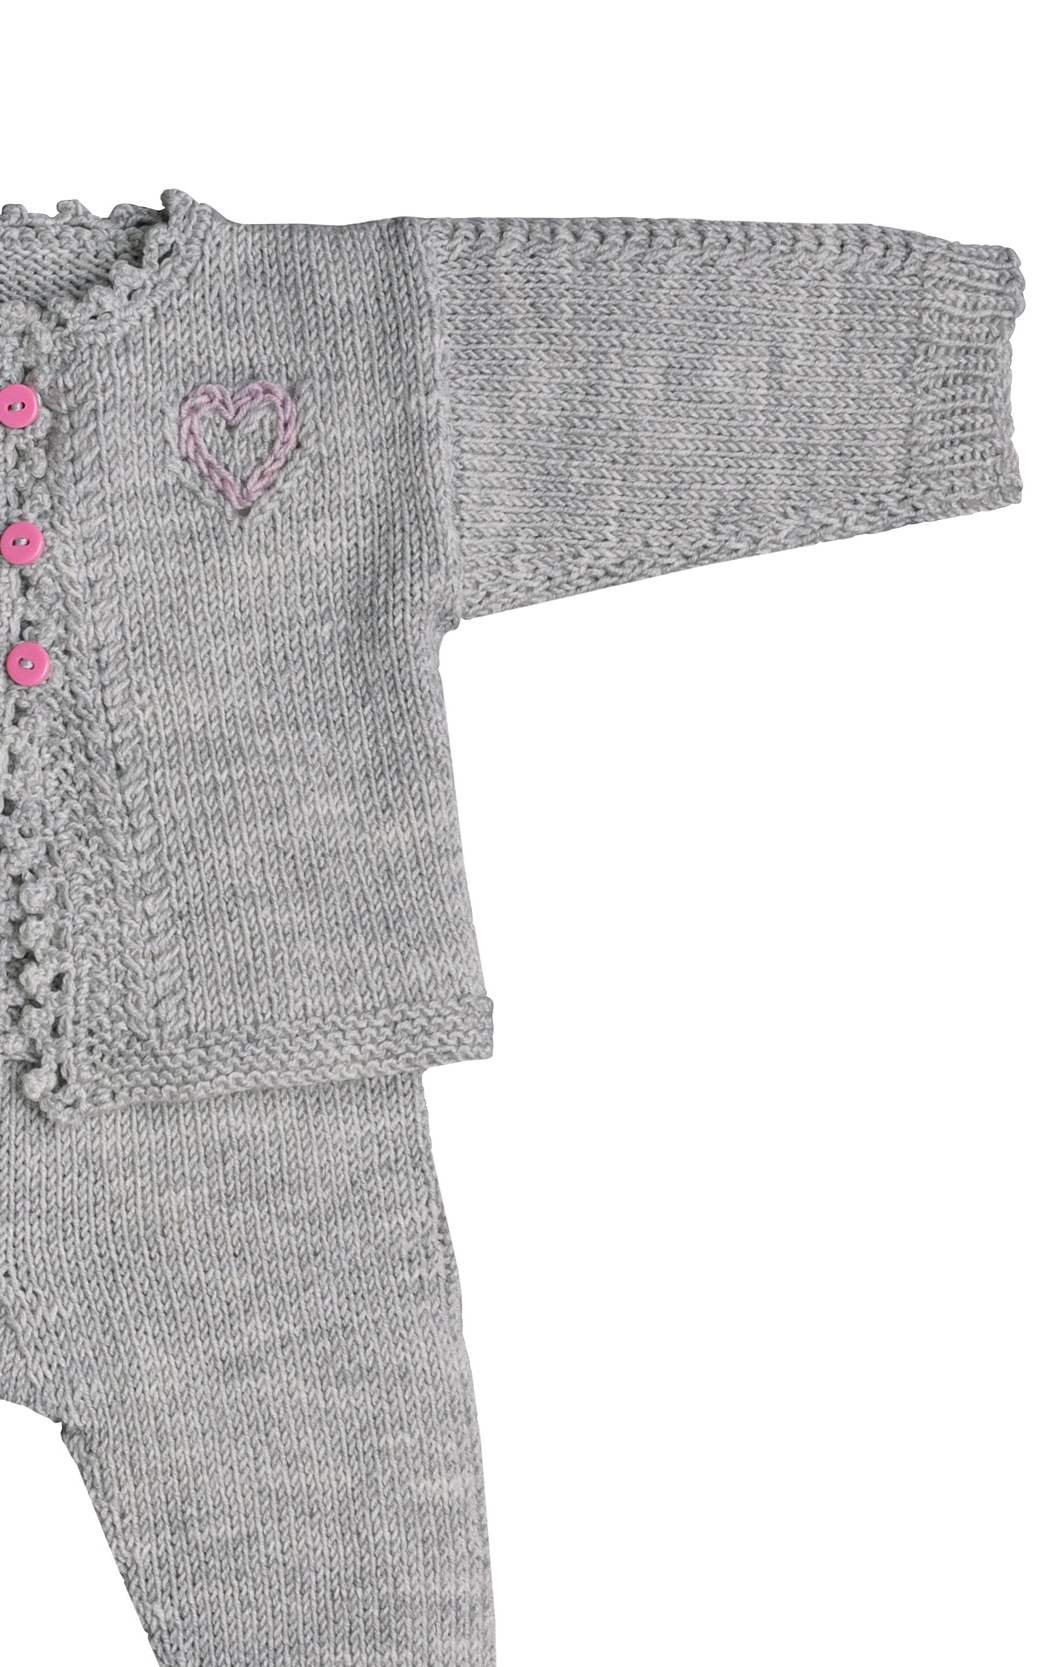 Baby Jacke mit Ajourherz - Strickset von LANA GROSSA jetzt online kaufen bei OONIQUE